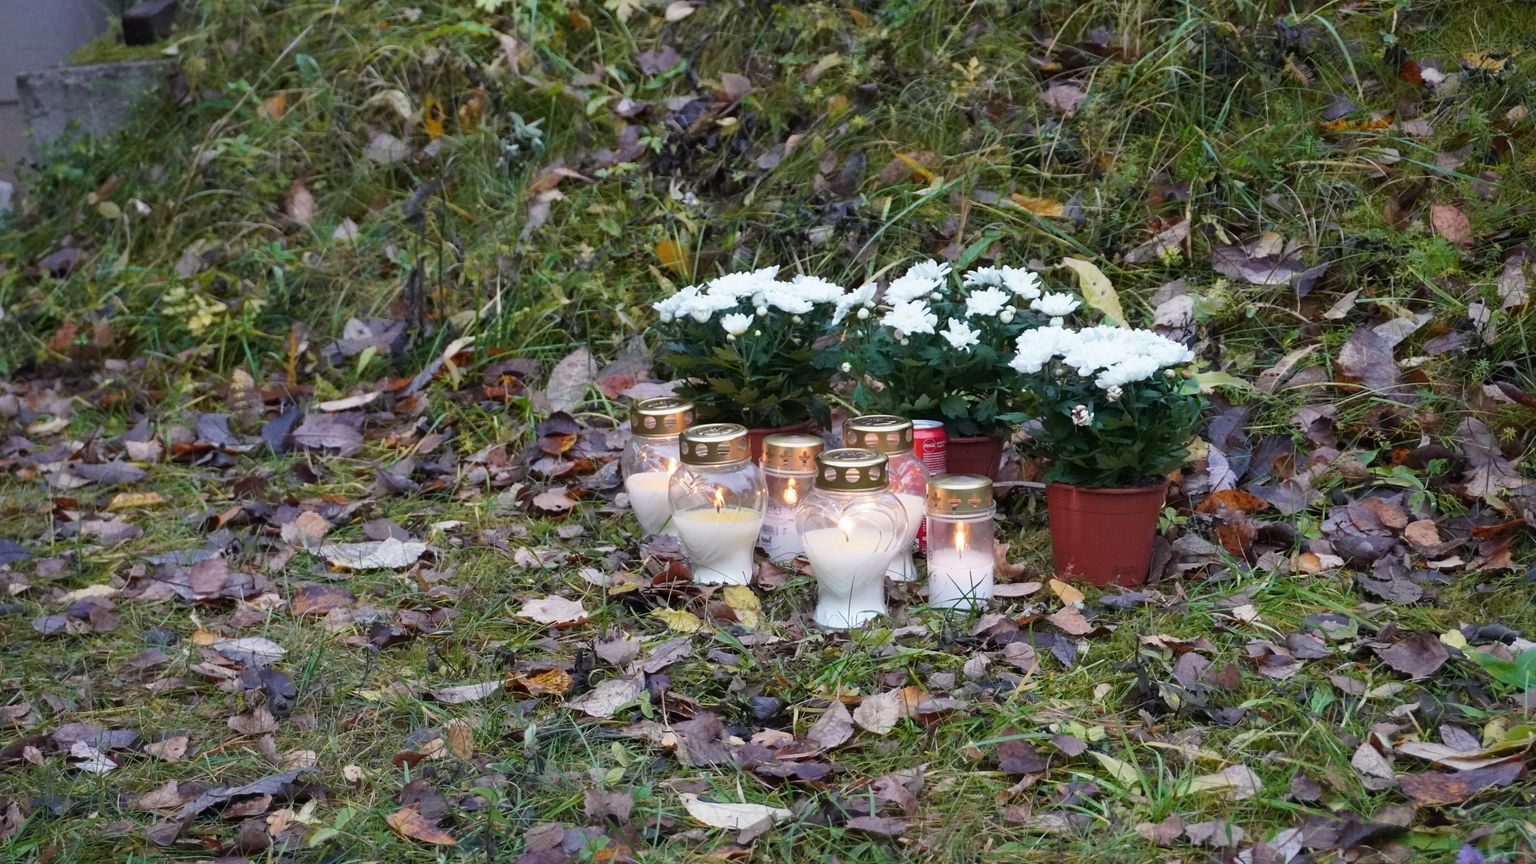 Võrumaal Järvere lasketiirus leidis oktoobri lõpus aset õnnetus, milles hukkus 26-aastane politseinik.